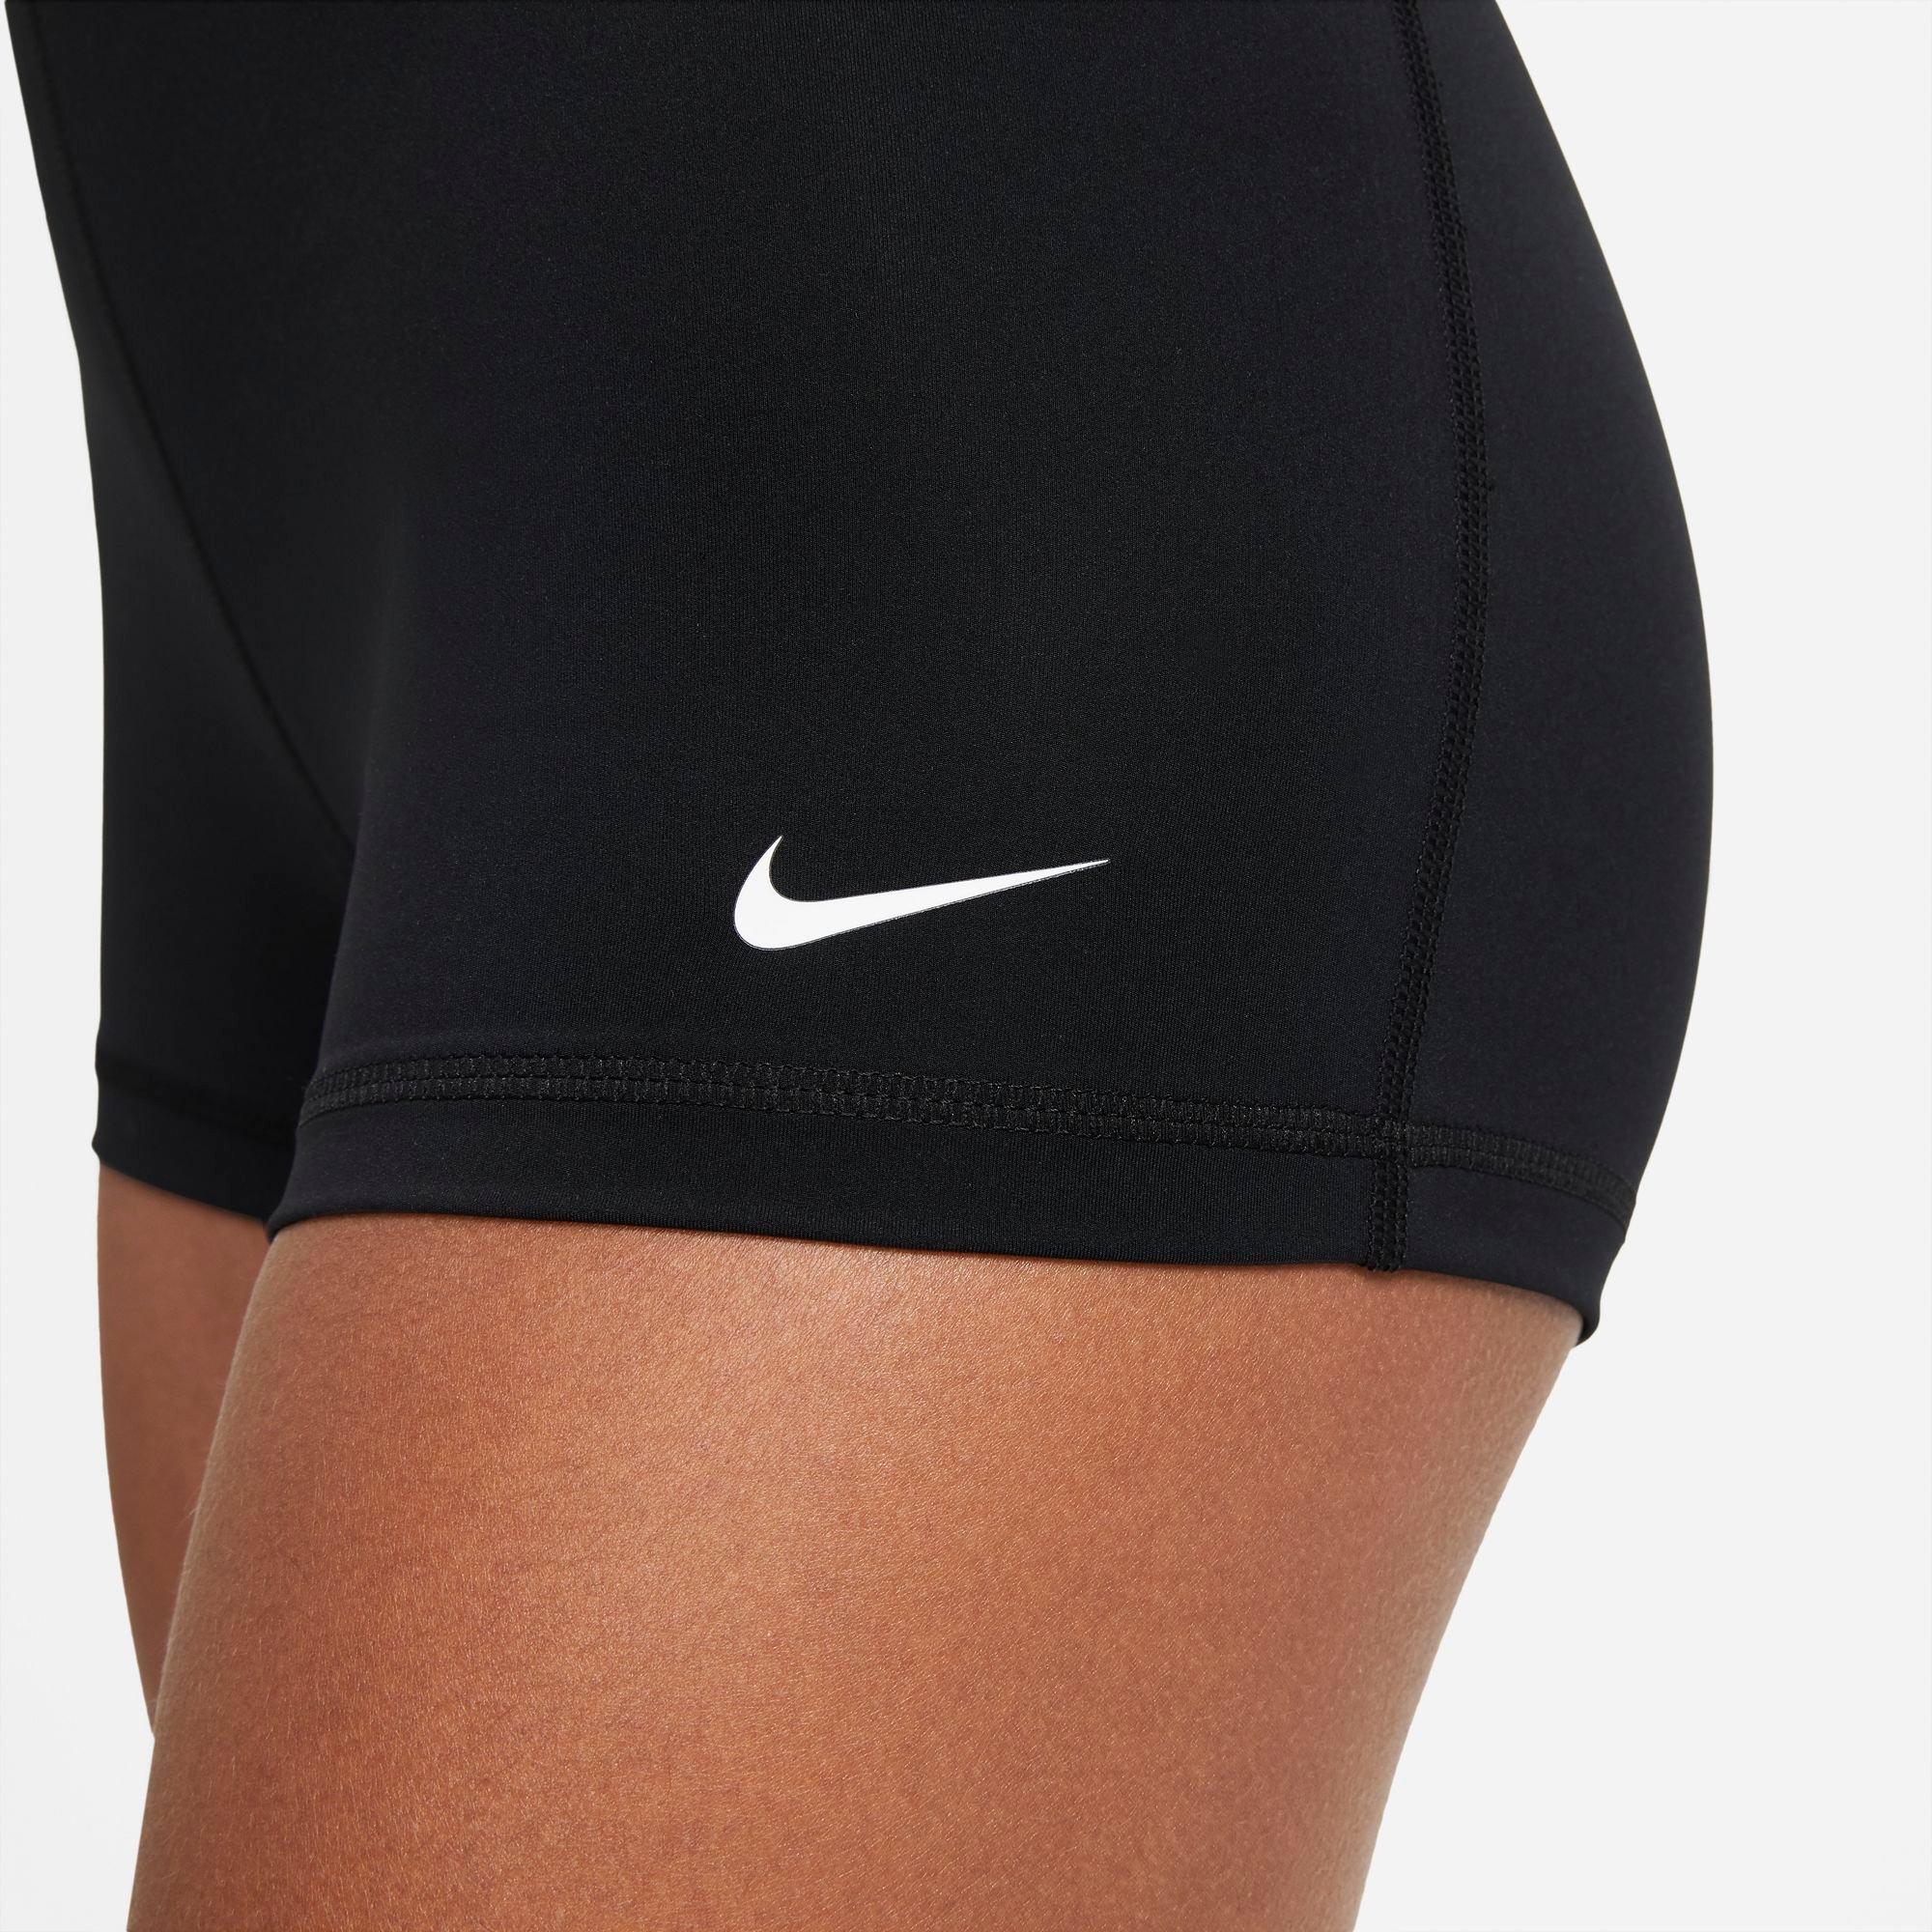 Nike Women's Pro 3 Shorts - Black